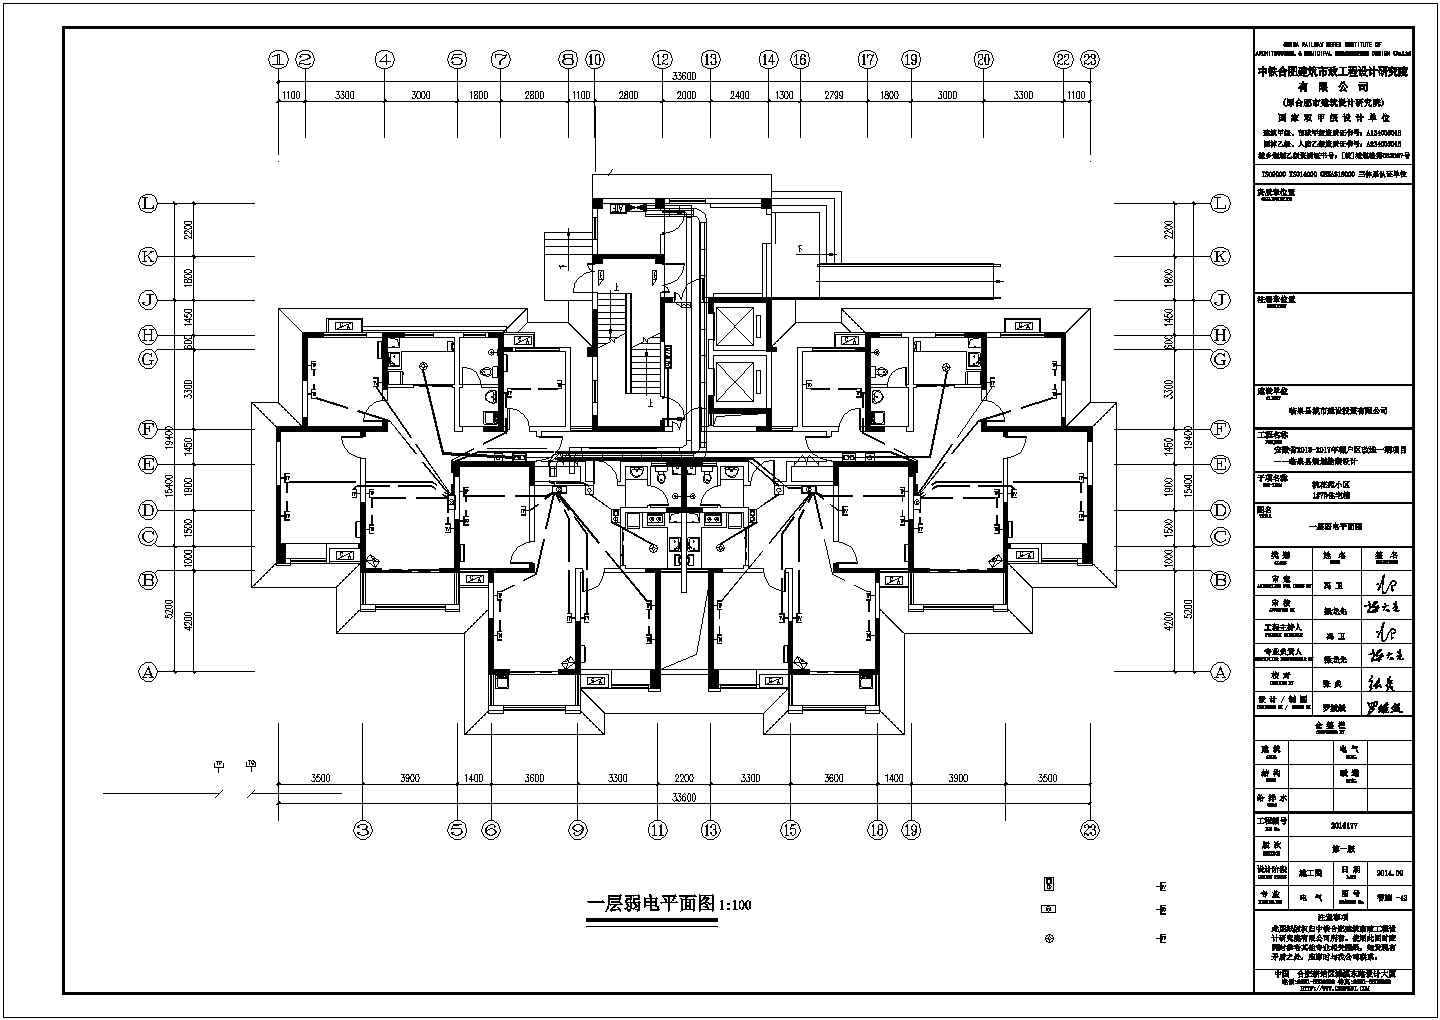 桃花苑1# 7#住宅小区智能化CAD建筑图纸